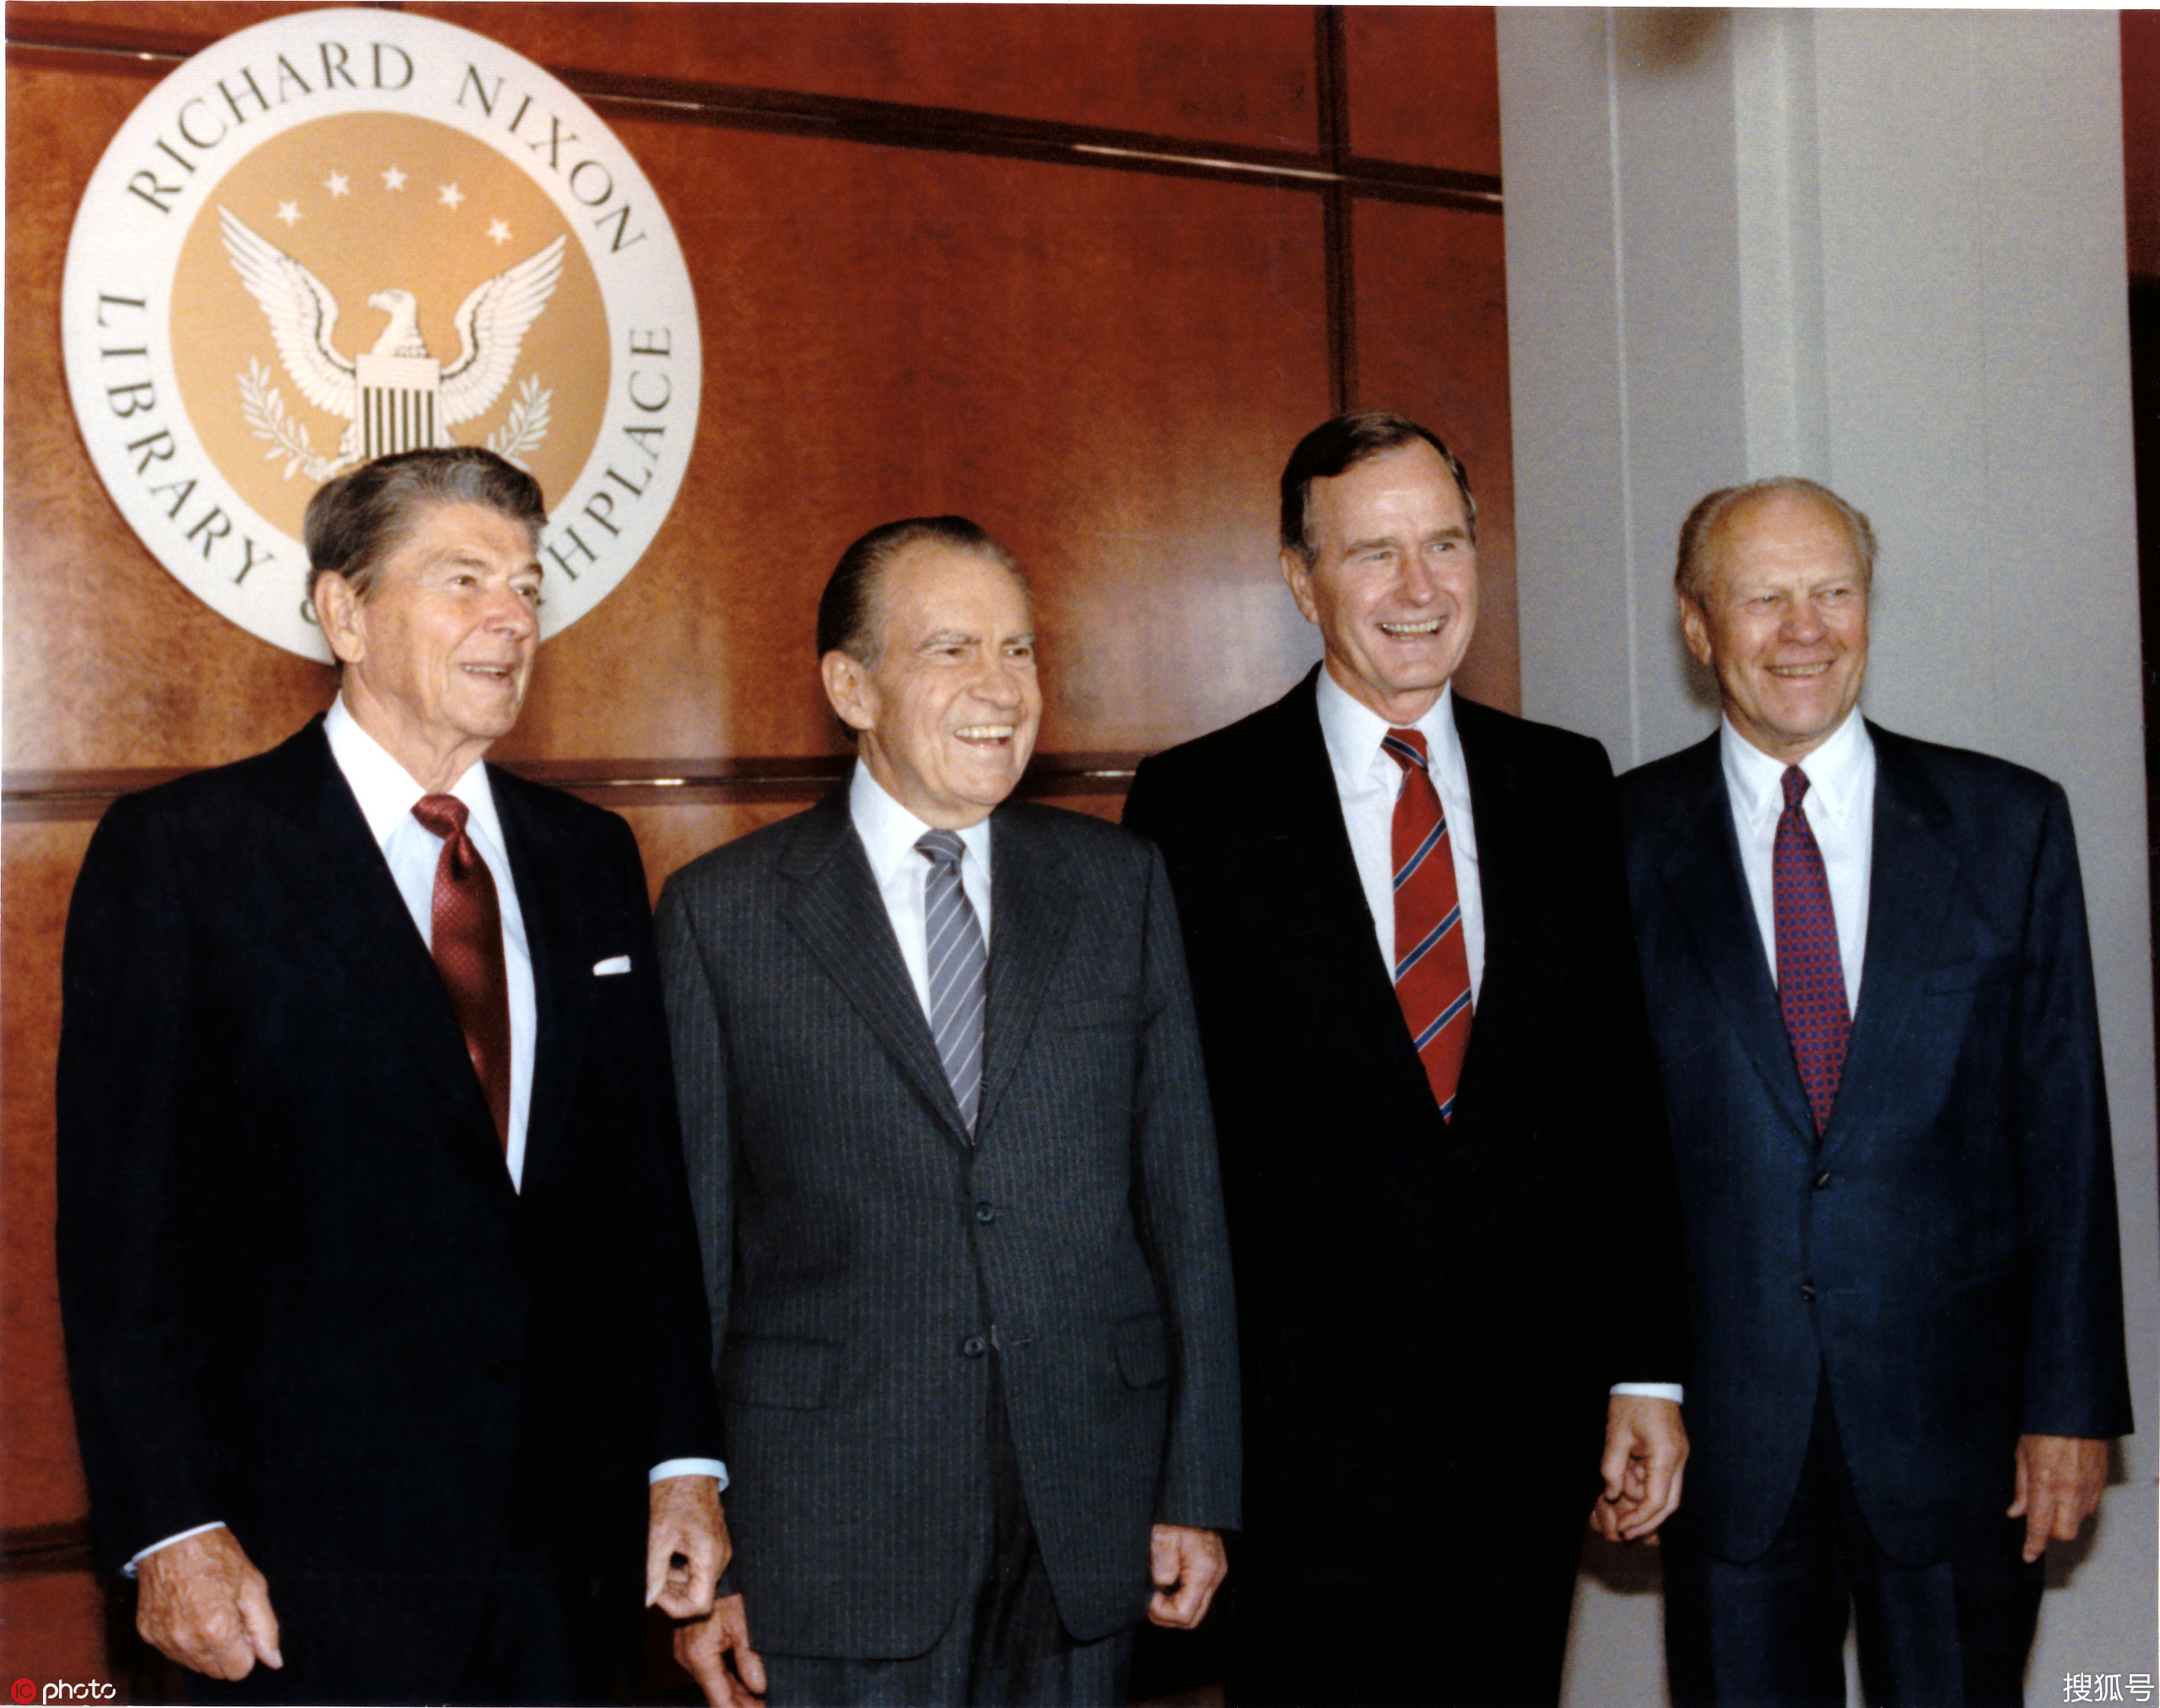 尼克松:首位在任期间访华的美国总统